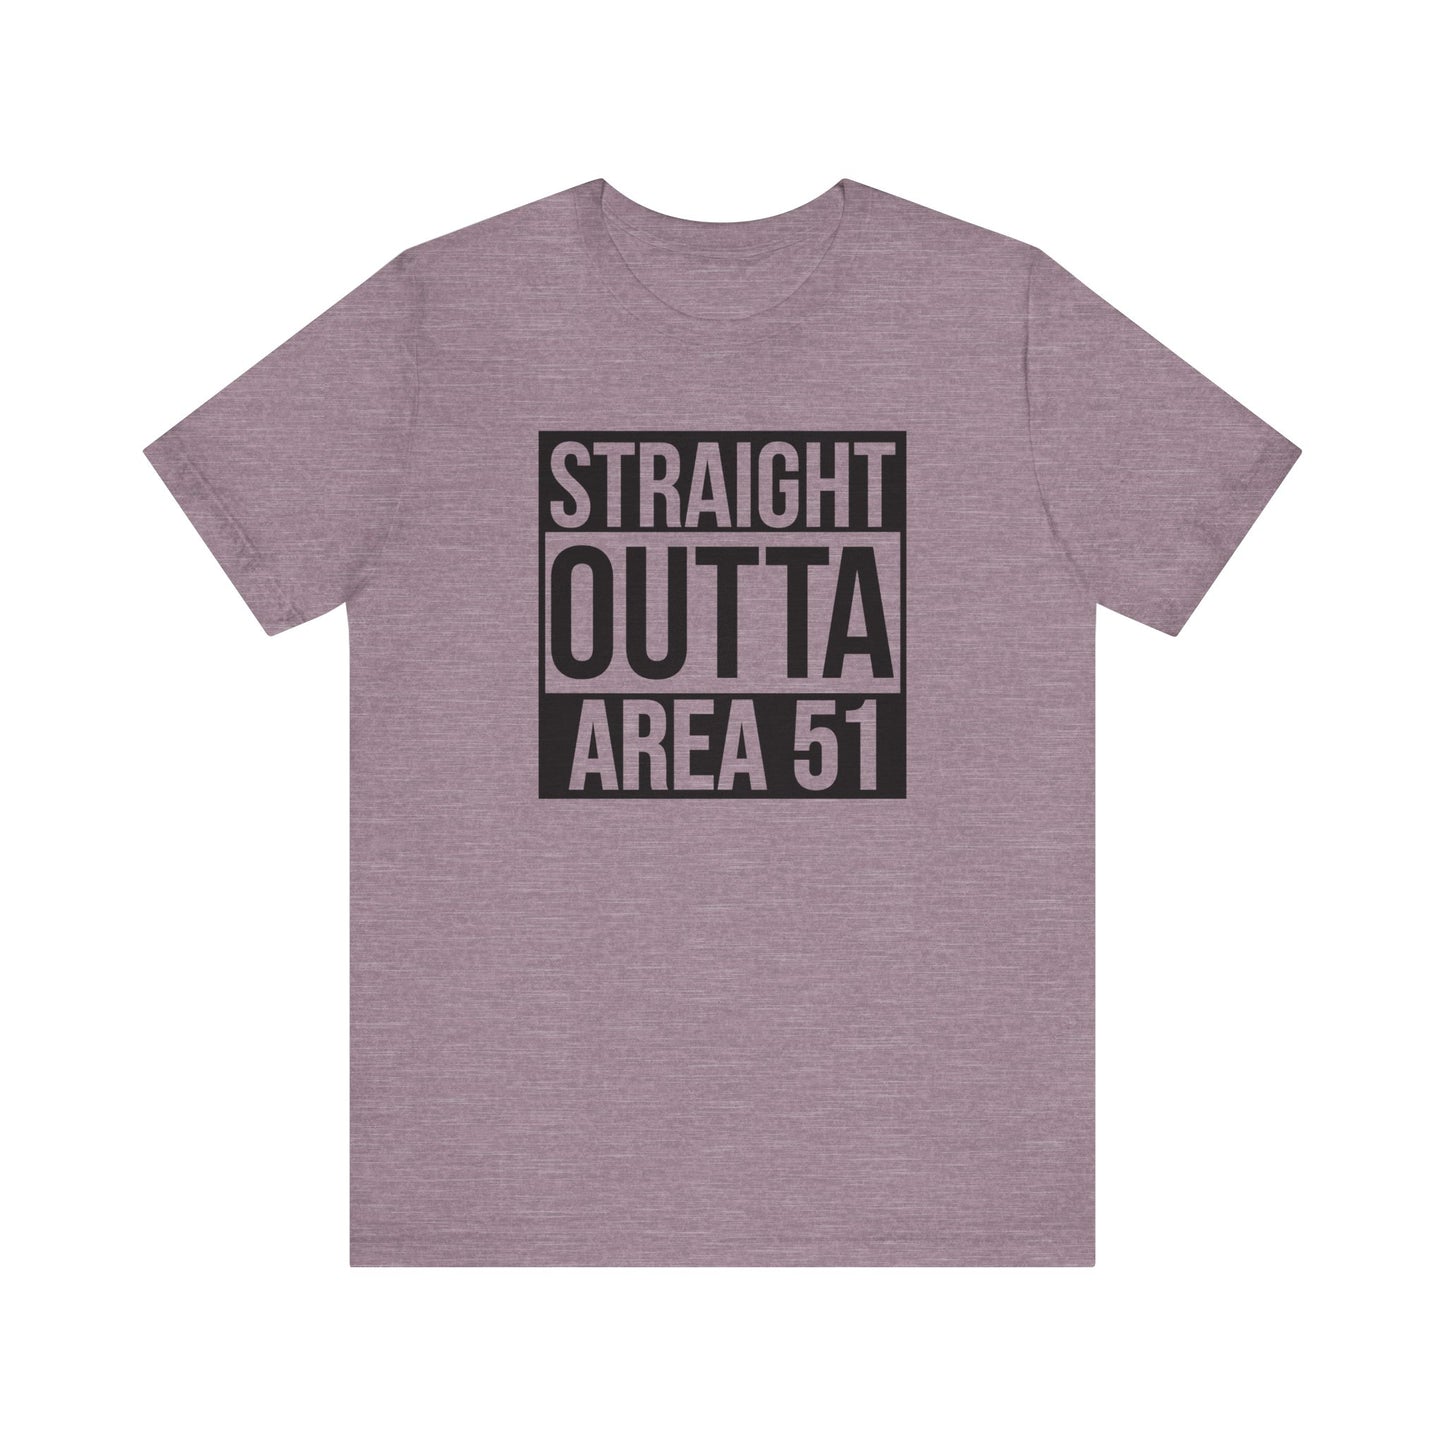 Area 51 T-Shirt For Alien Base T Shirt For Groom Lake TShirt